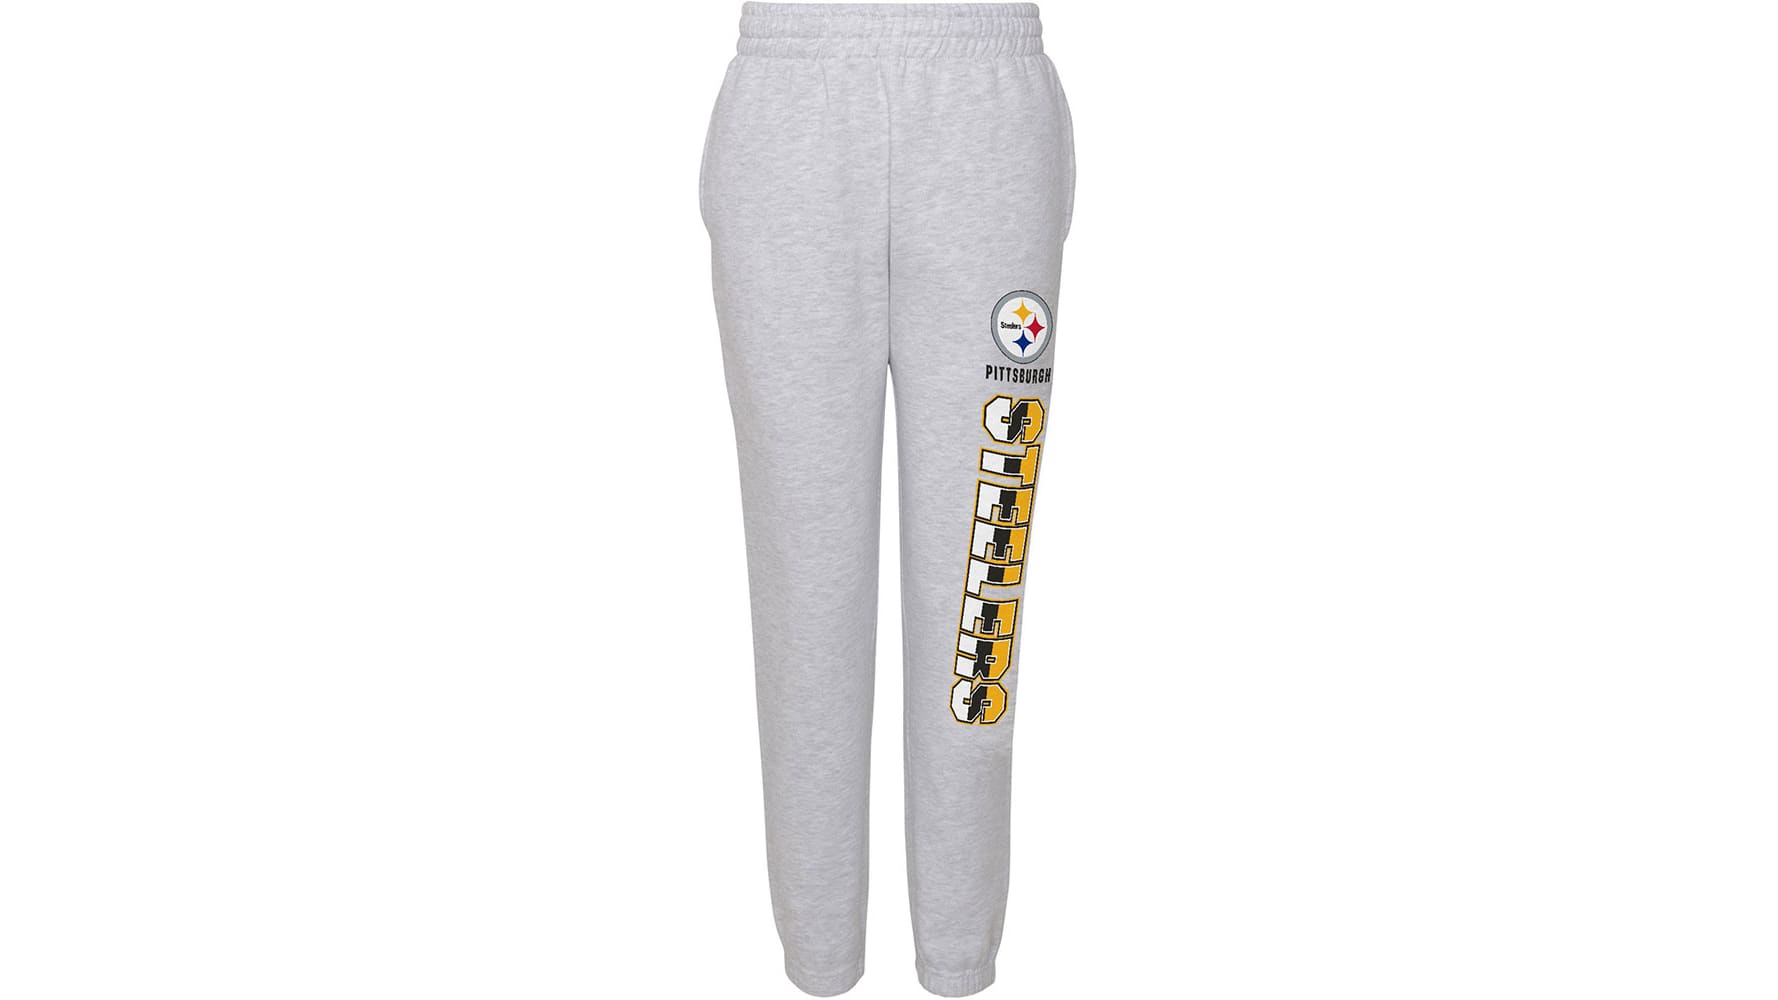 Pittsburgh Steelers Nike Legging - Womens